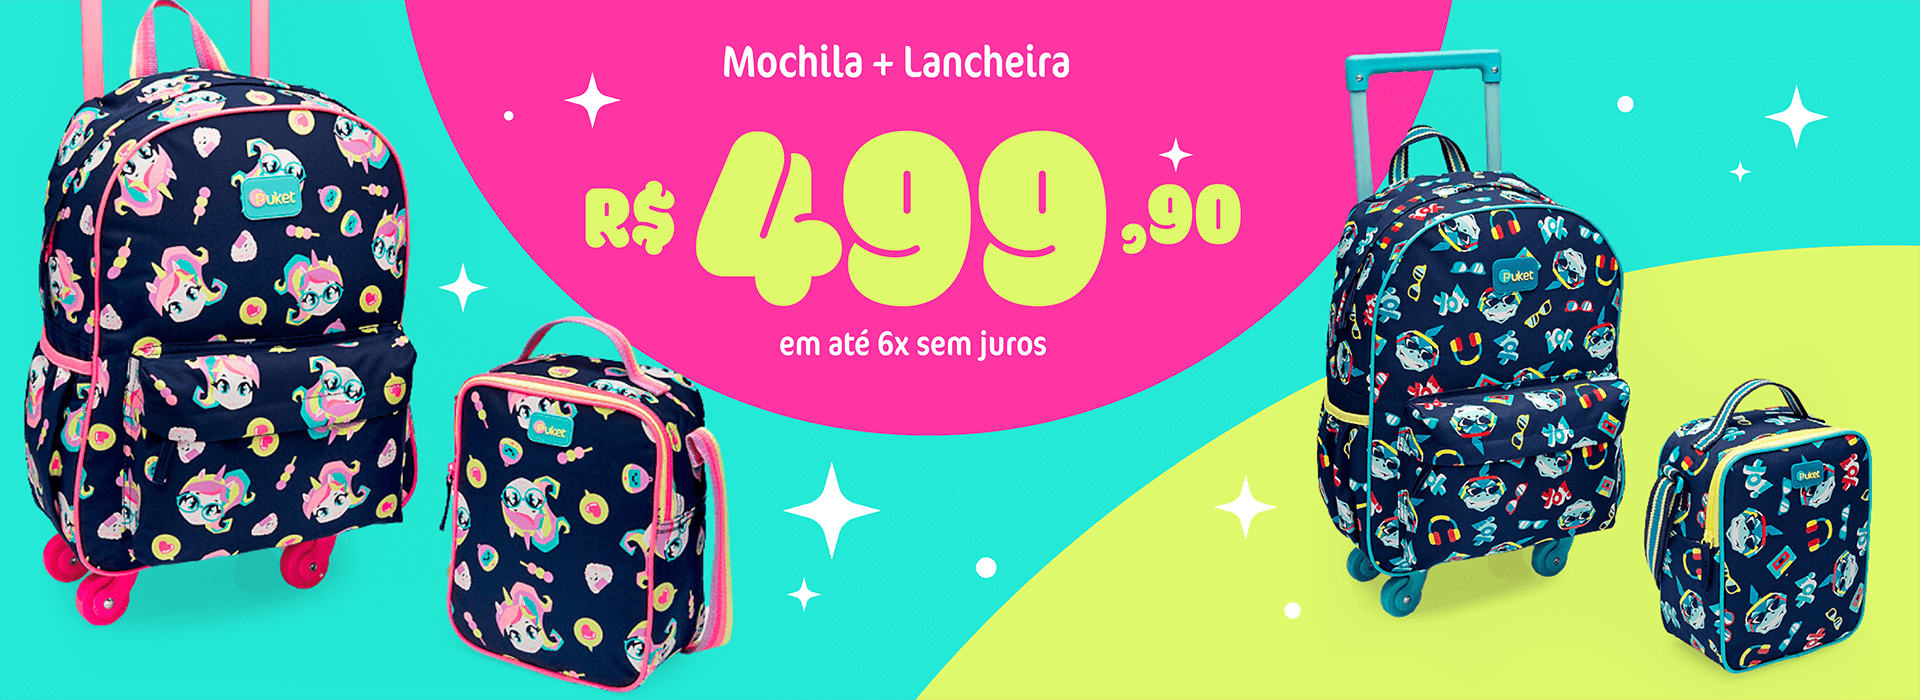 Kit Mochila com Lancheira por apenas R$ 499,90